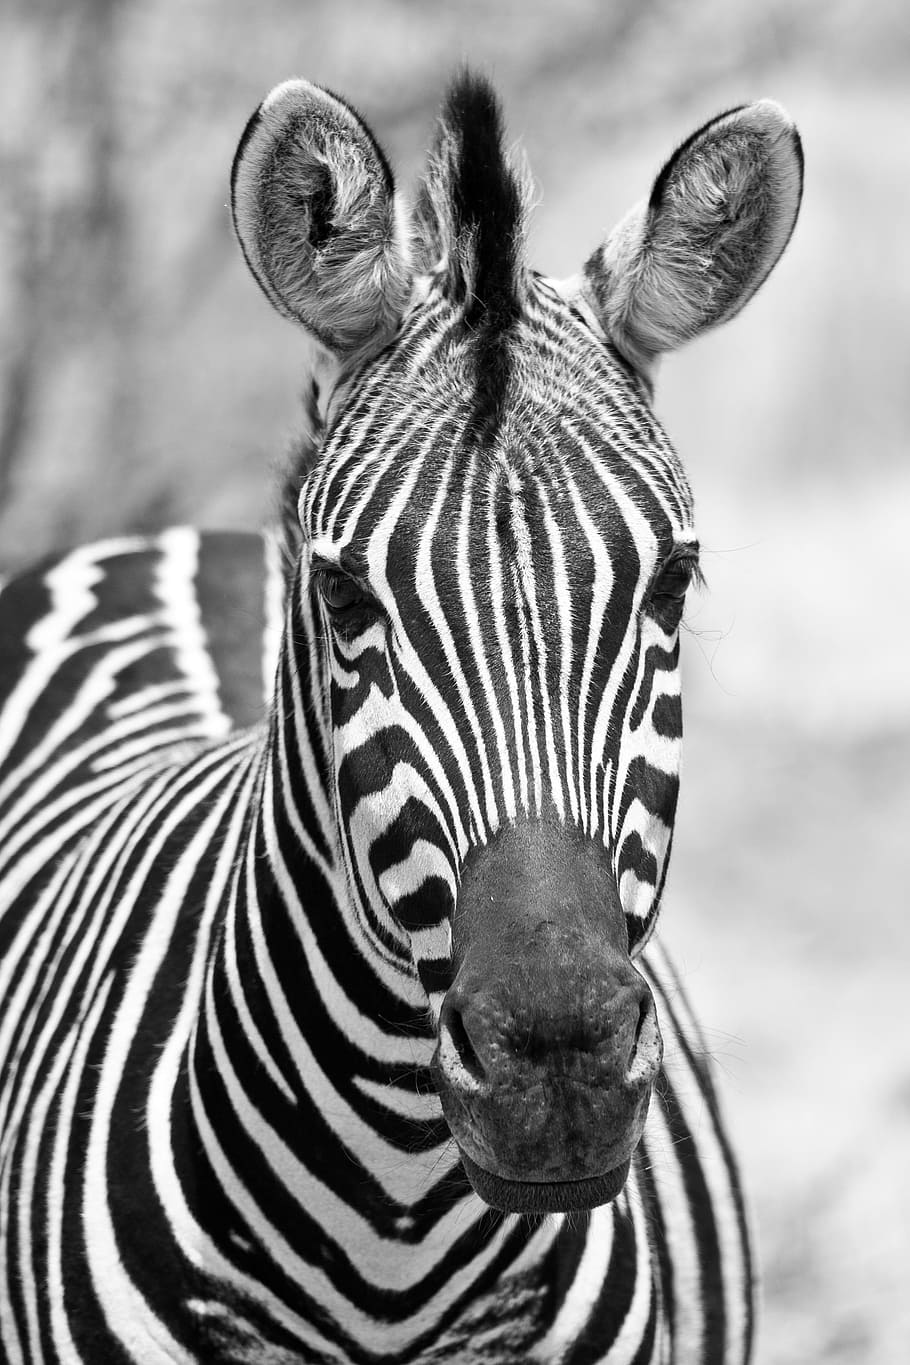 회색조 사진, 얼룩말, 흑백, 검정 흰색, 필라 네스 버그 국립 공원, 인물, 남아프리카, 수직, 야생 동물, 동물 야생 동물